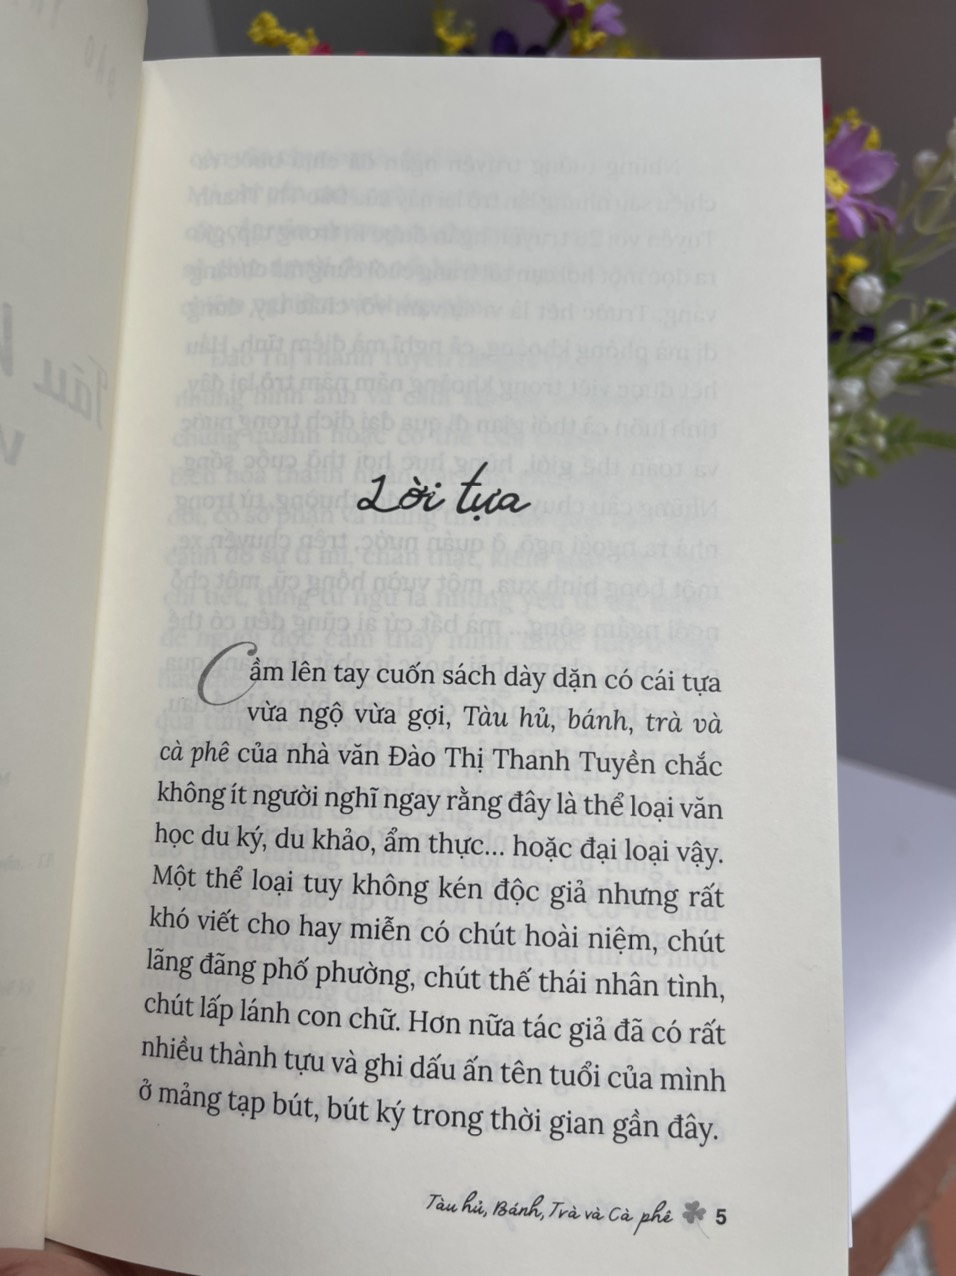 TÀU HỦ, BÁNH, TRÀ VÀ CÀ PHÊ - Đào Thị Thanh Tuyền – Nxb Tổng hợp Tp Hồ Chí Minh (bìa mềm)